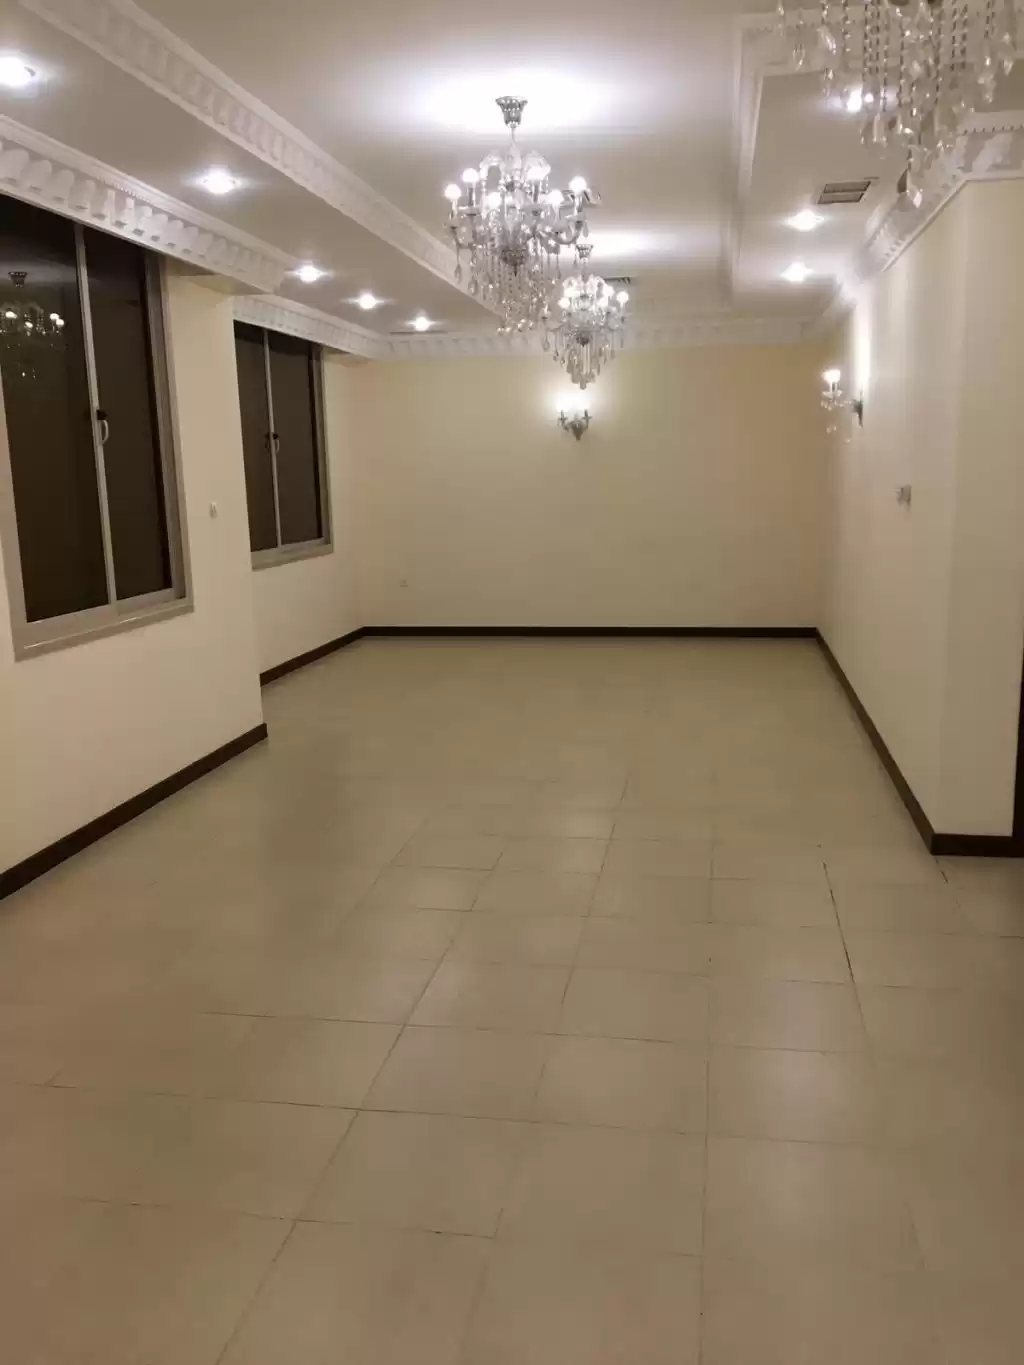 Résidentiel Propriété prête 4 chambres U / f Appartement  a louer au Koweit #25215 - 1  image 